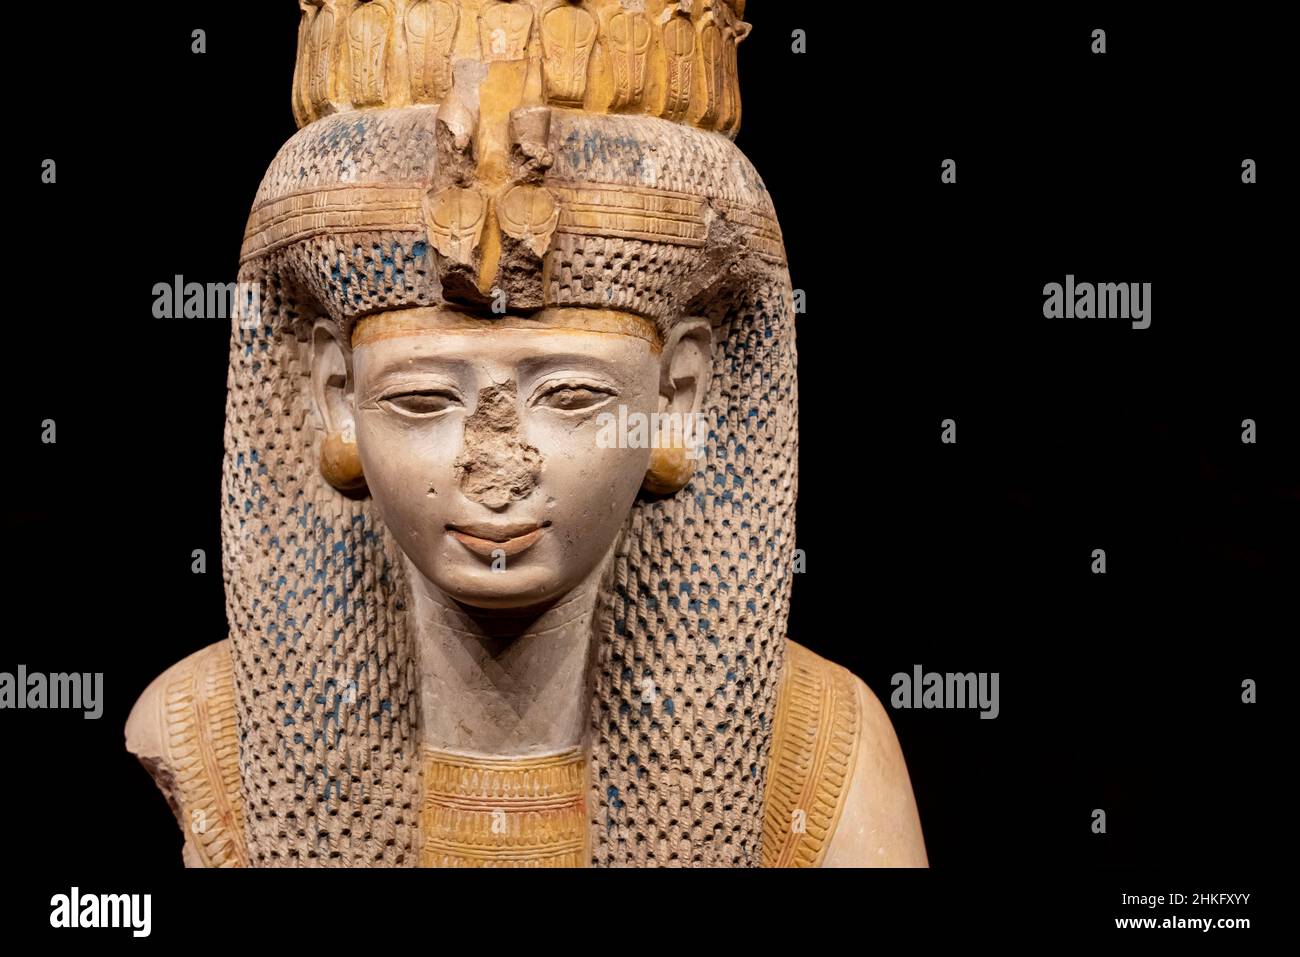 Égypte, gouvernorat de la mer Rouge, Hurghada, Musée Hurghada, Reine Meritanum,Fille de Ramses II qui, après la mort de Nefertari, devint sa grande épouse royale, de Louxor Banque D'Images